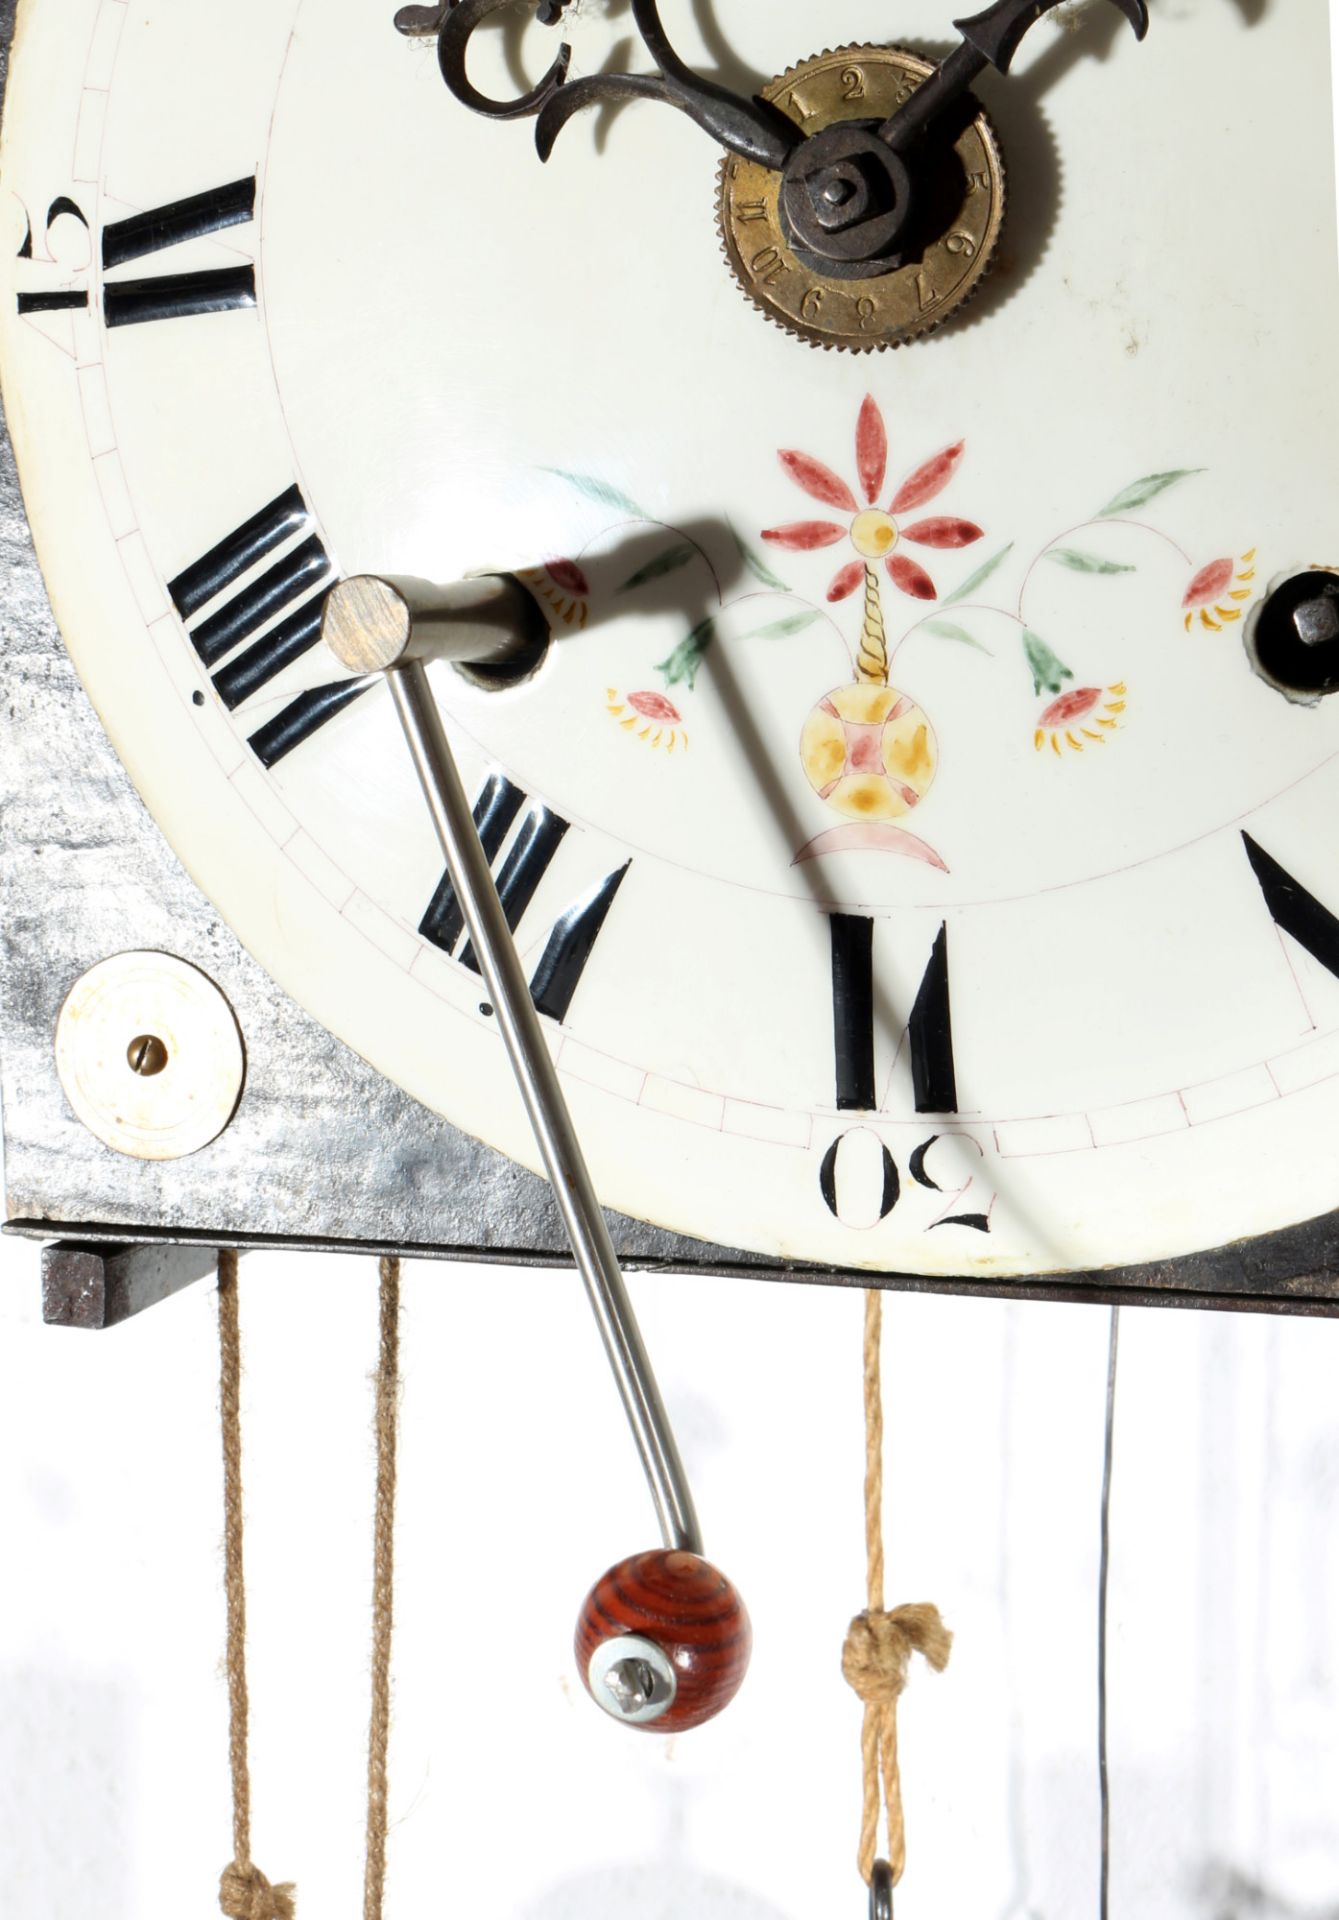 Hähnchenuhr Comtoise Frankreich um 1800, french comtoise rooster clock, - Bild 6 aus 6